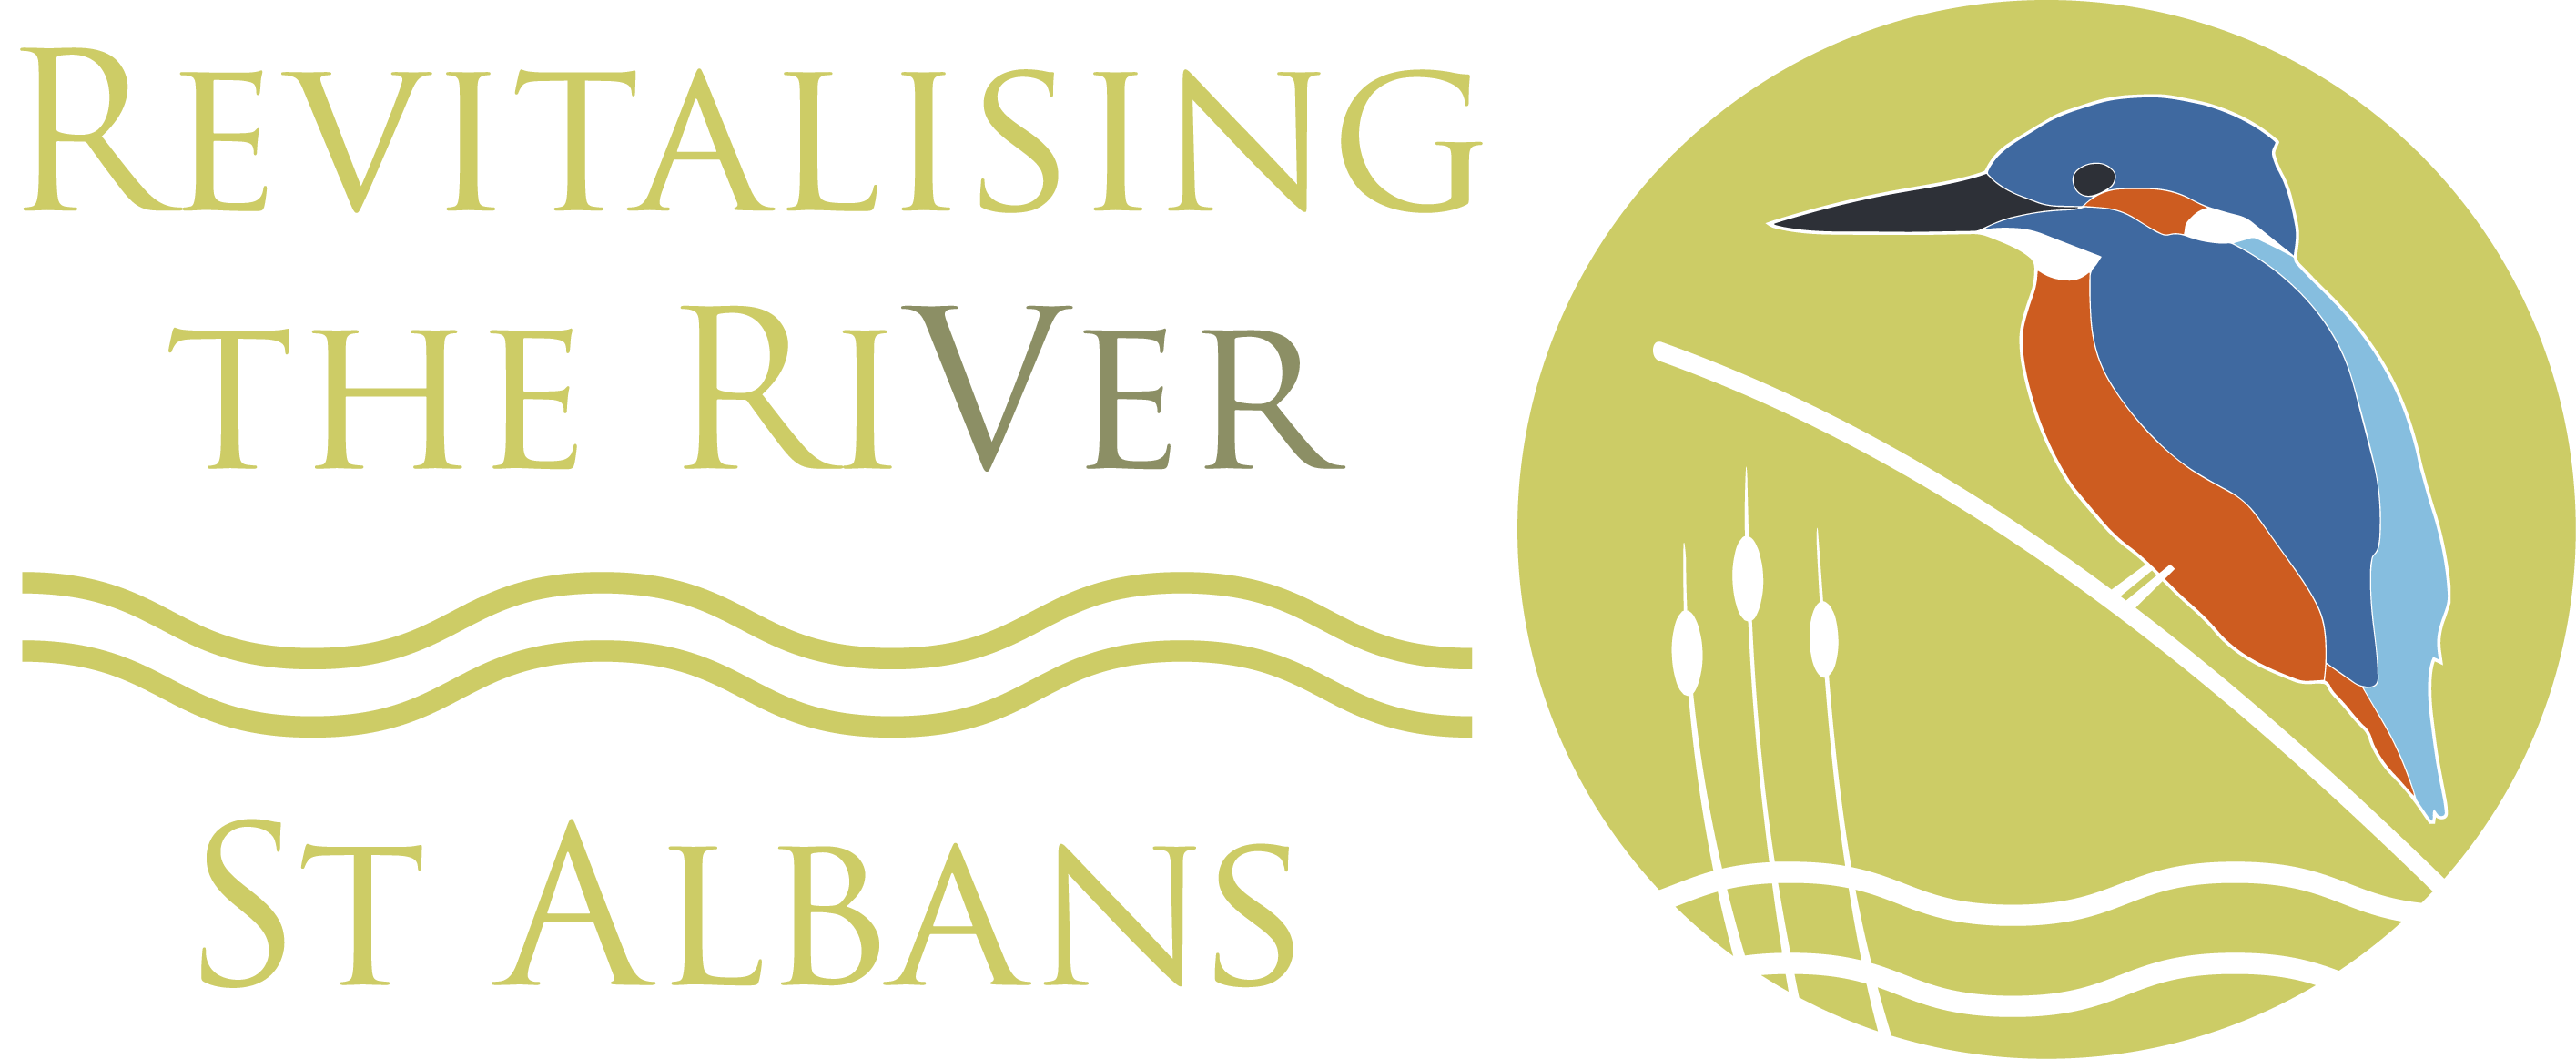 River Bird Logo - St Albans City & District Council Ver and Verulamium Park